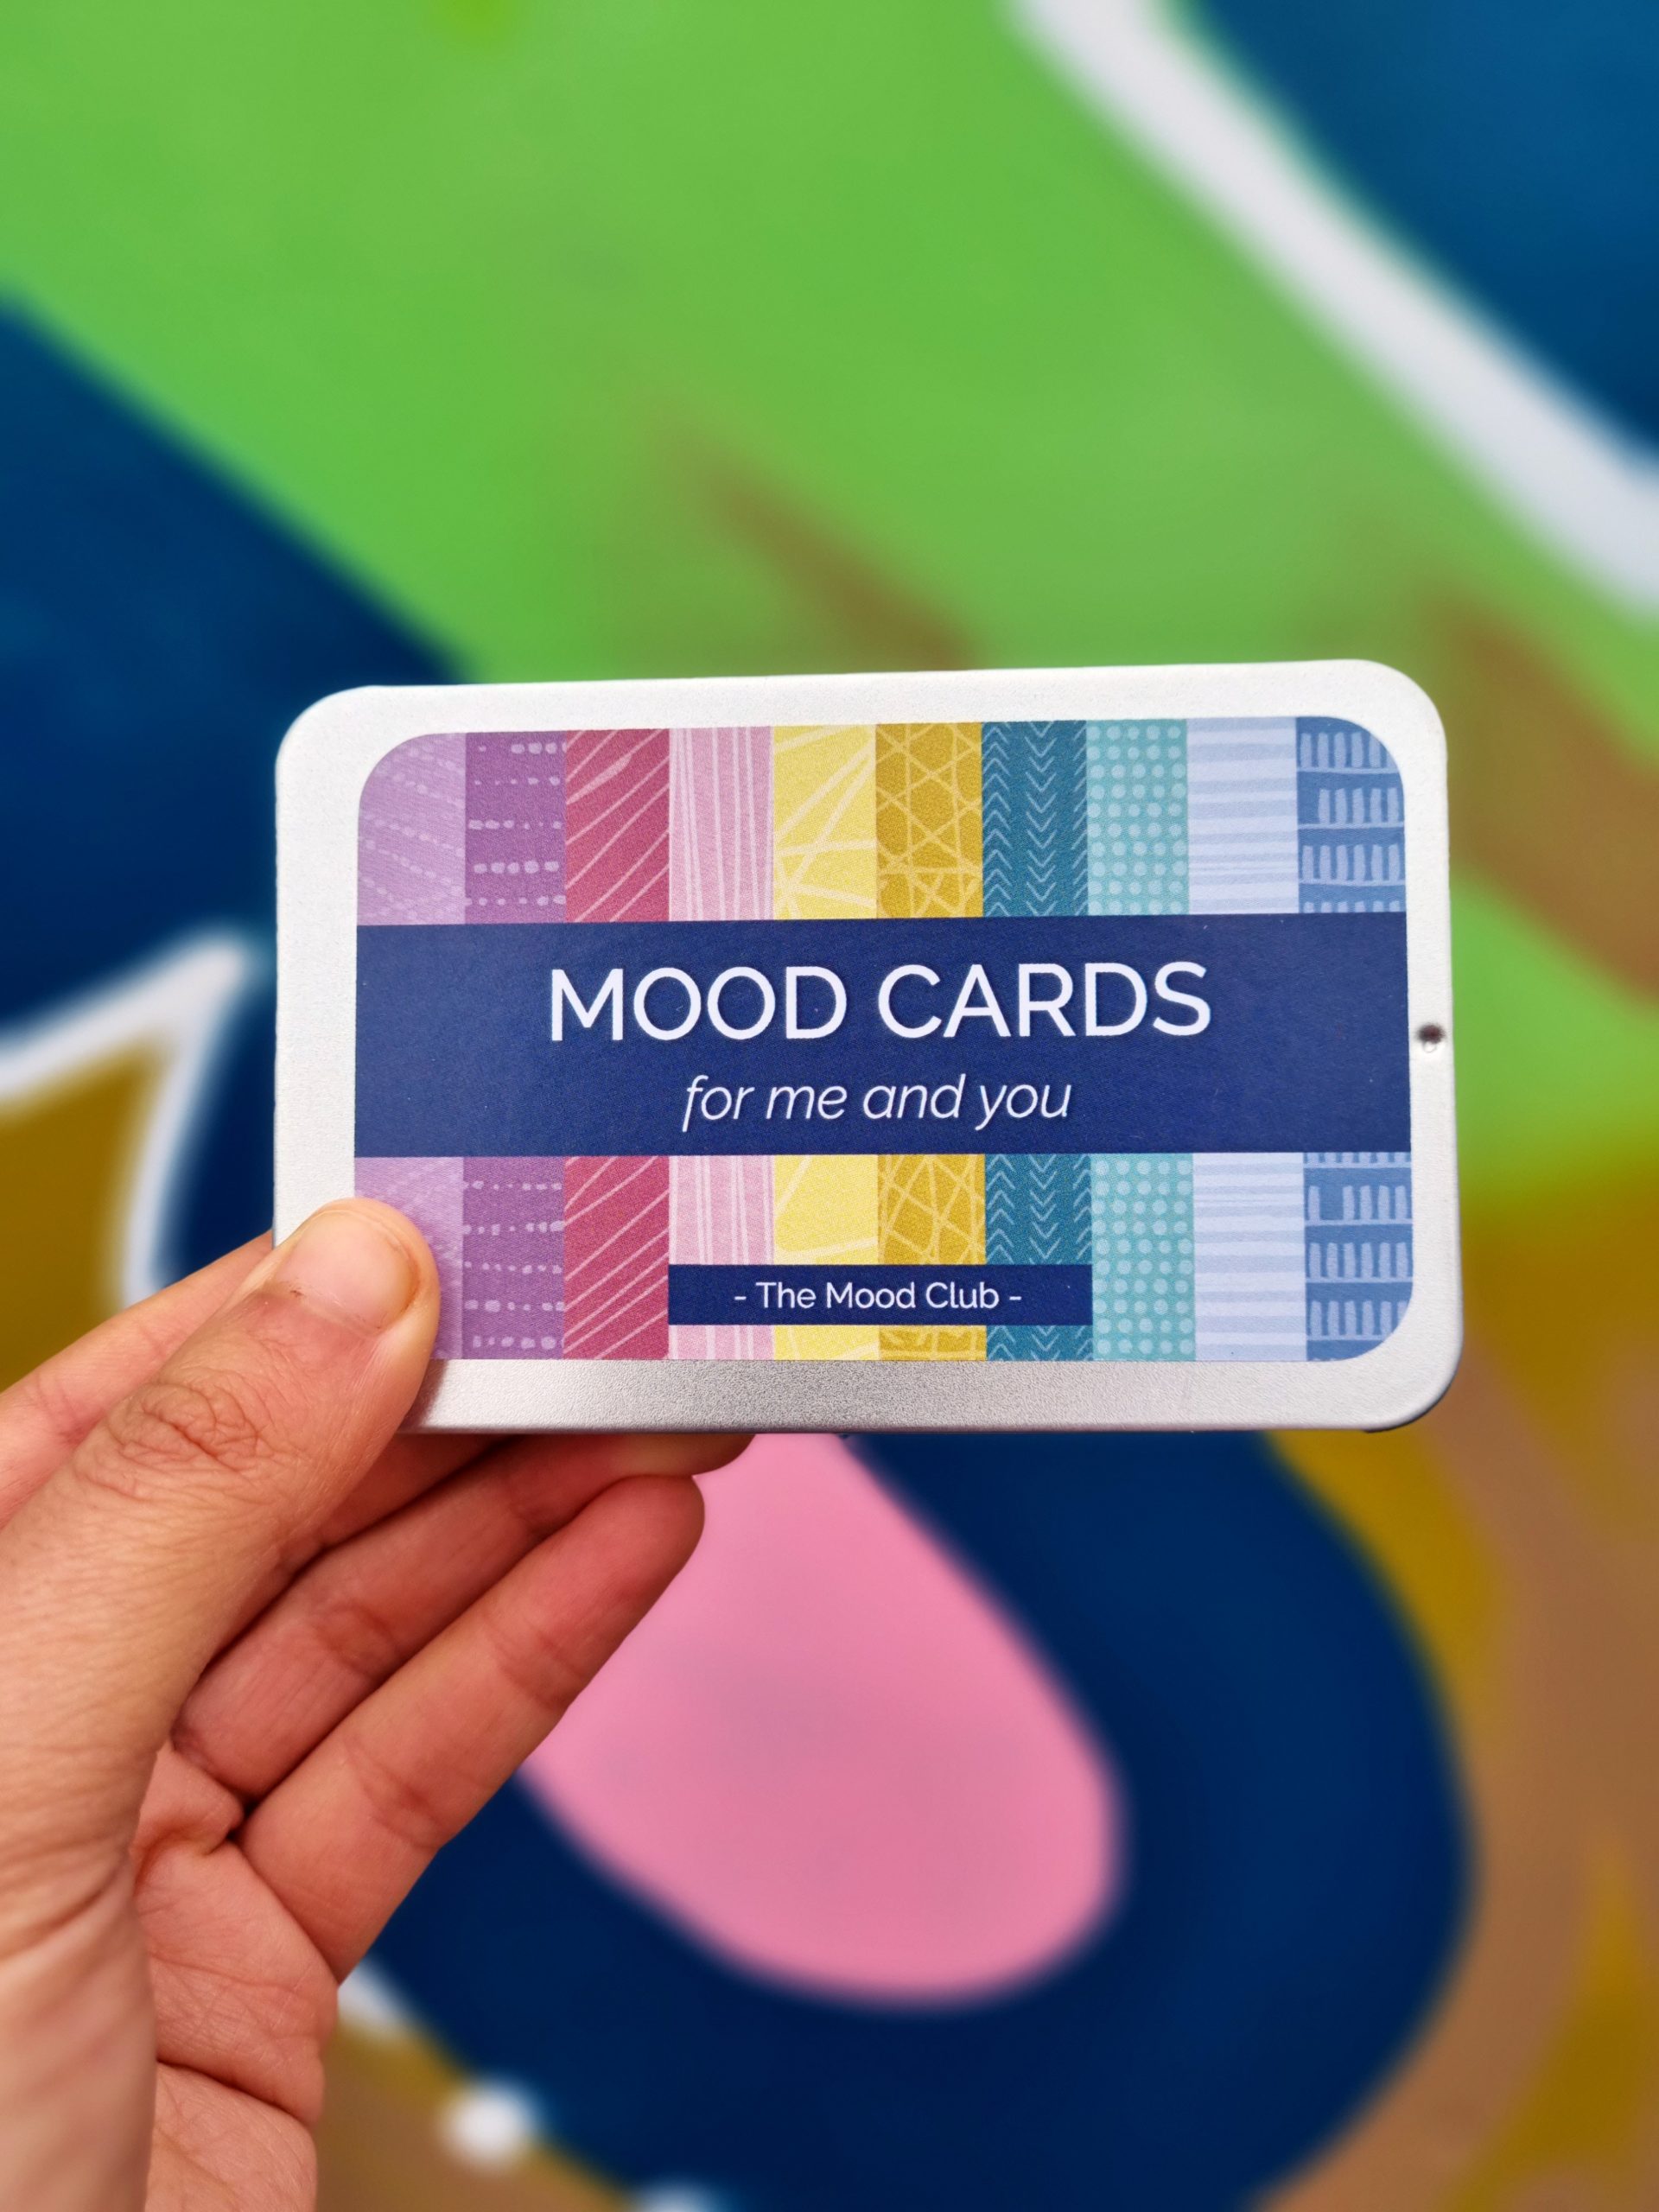 <img src="mood.jpg" alt="mood club mood cards"/> 